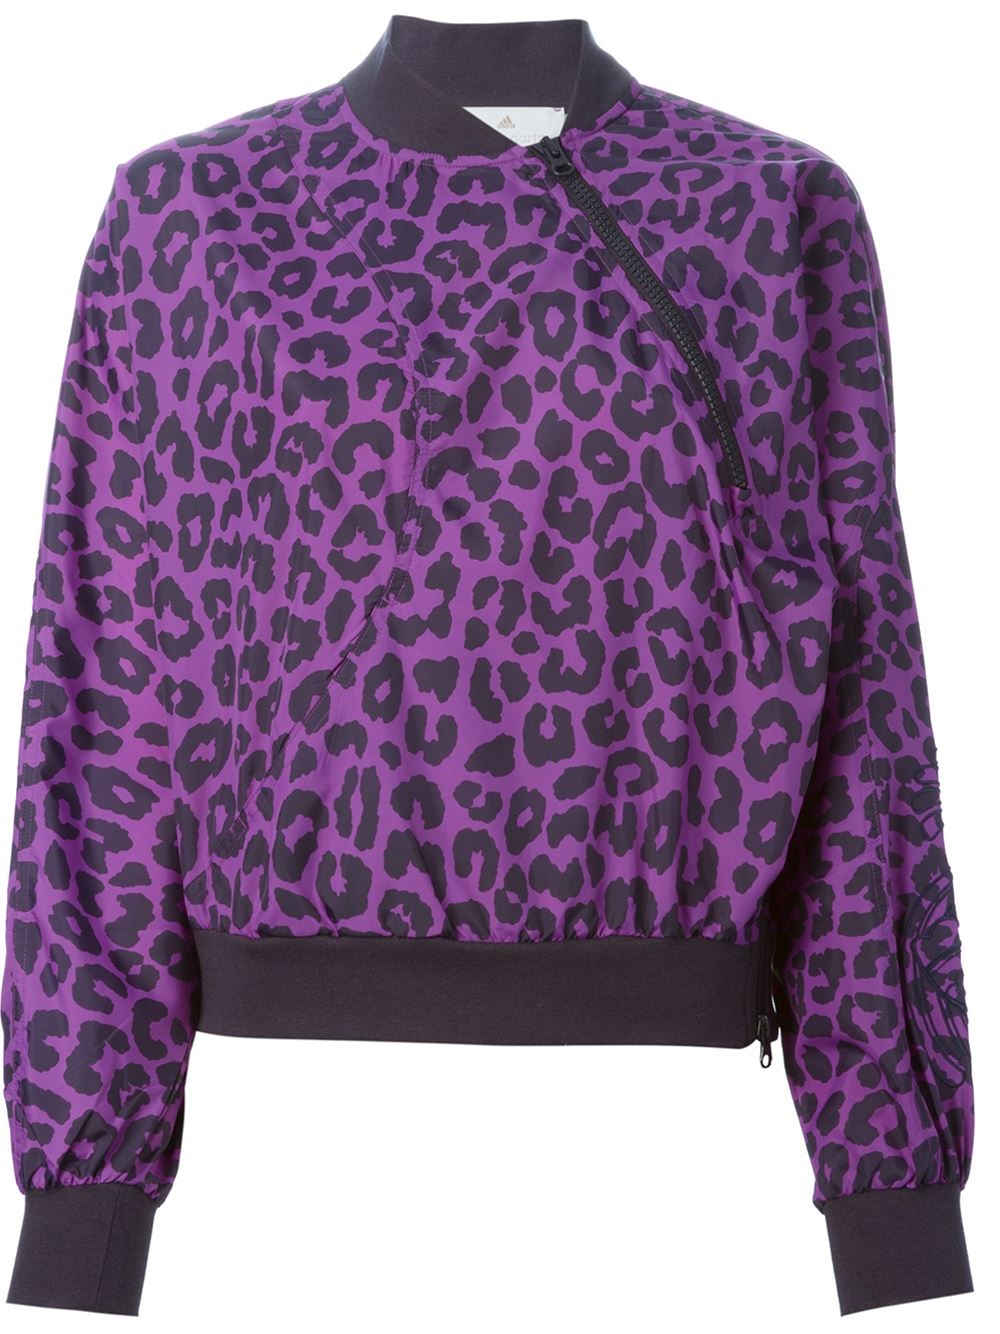 Adidas by stella mccartney Leopard Print Sport Jacket in Purple | Lyst